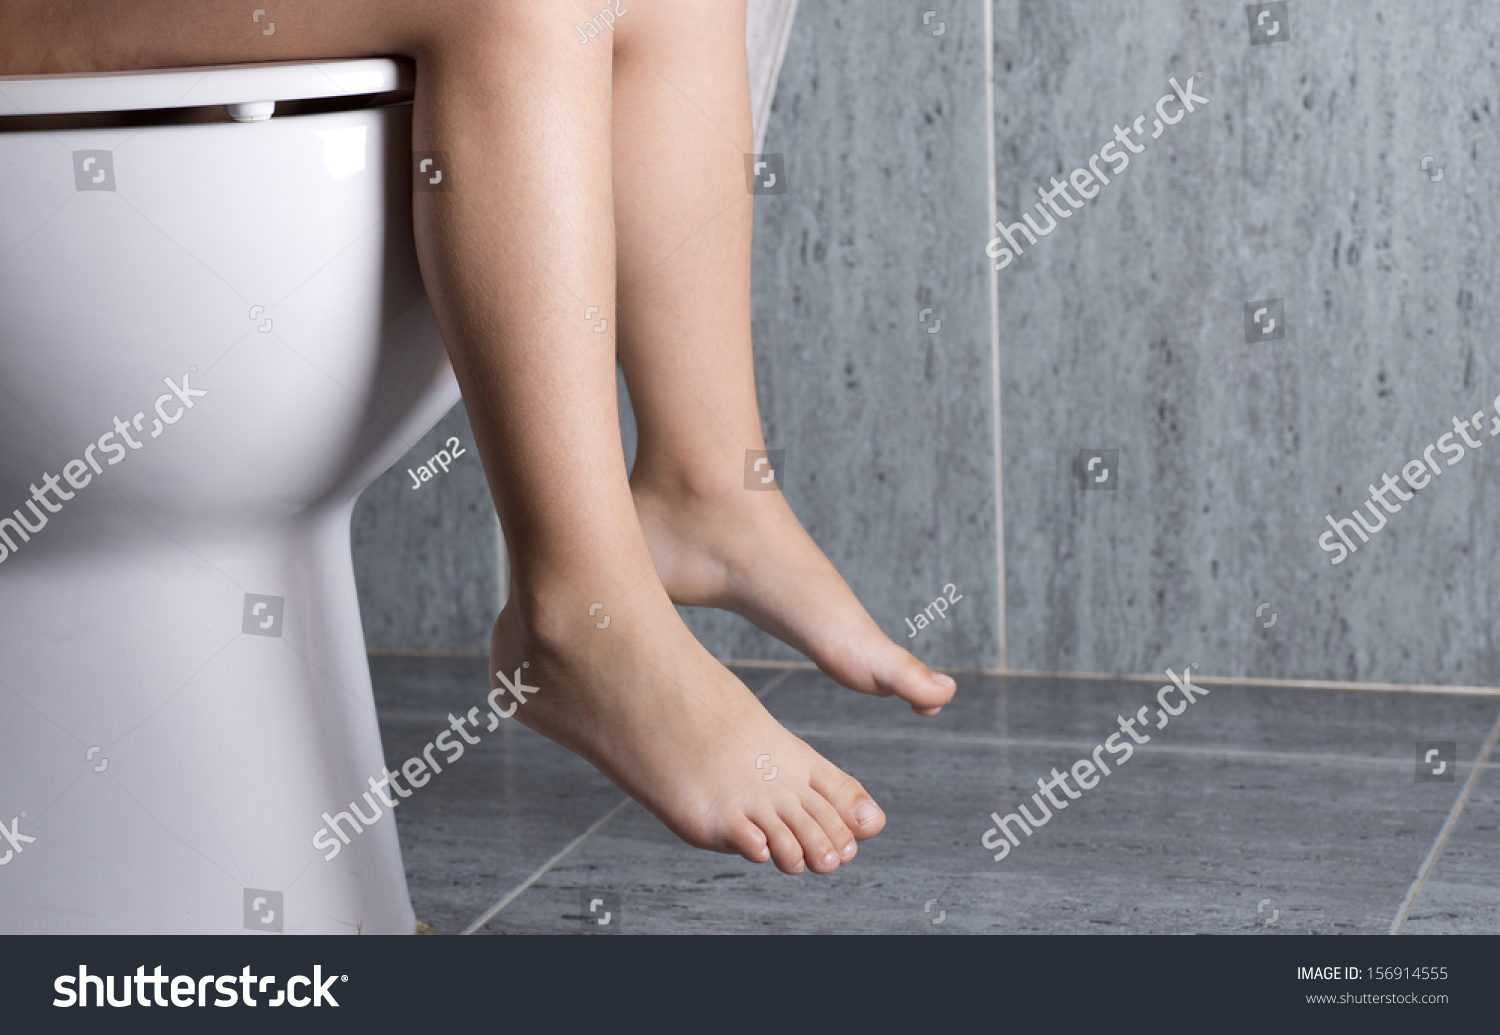 girl peeing close to camra